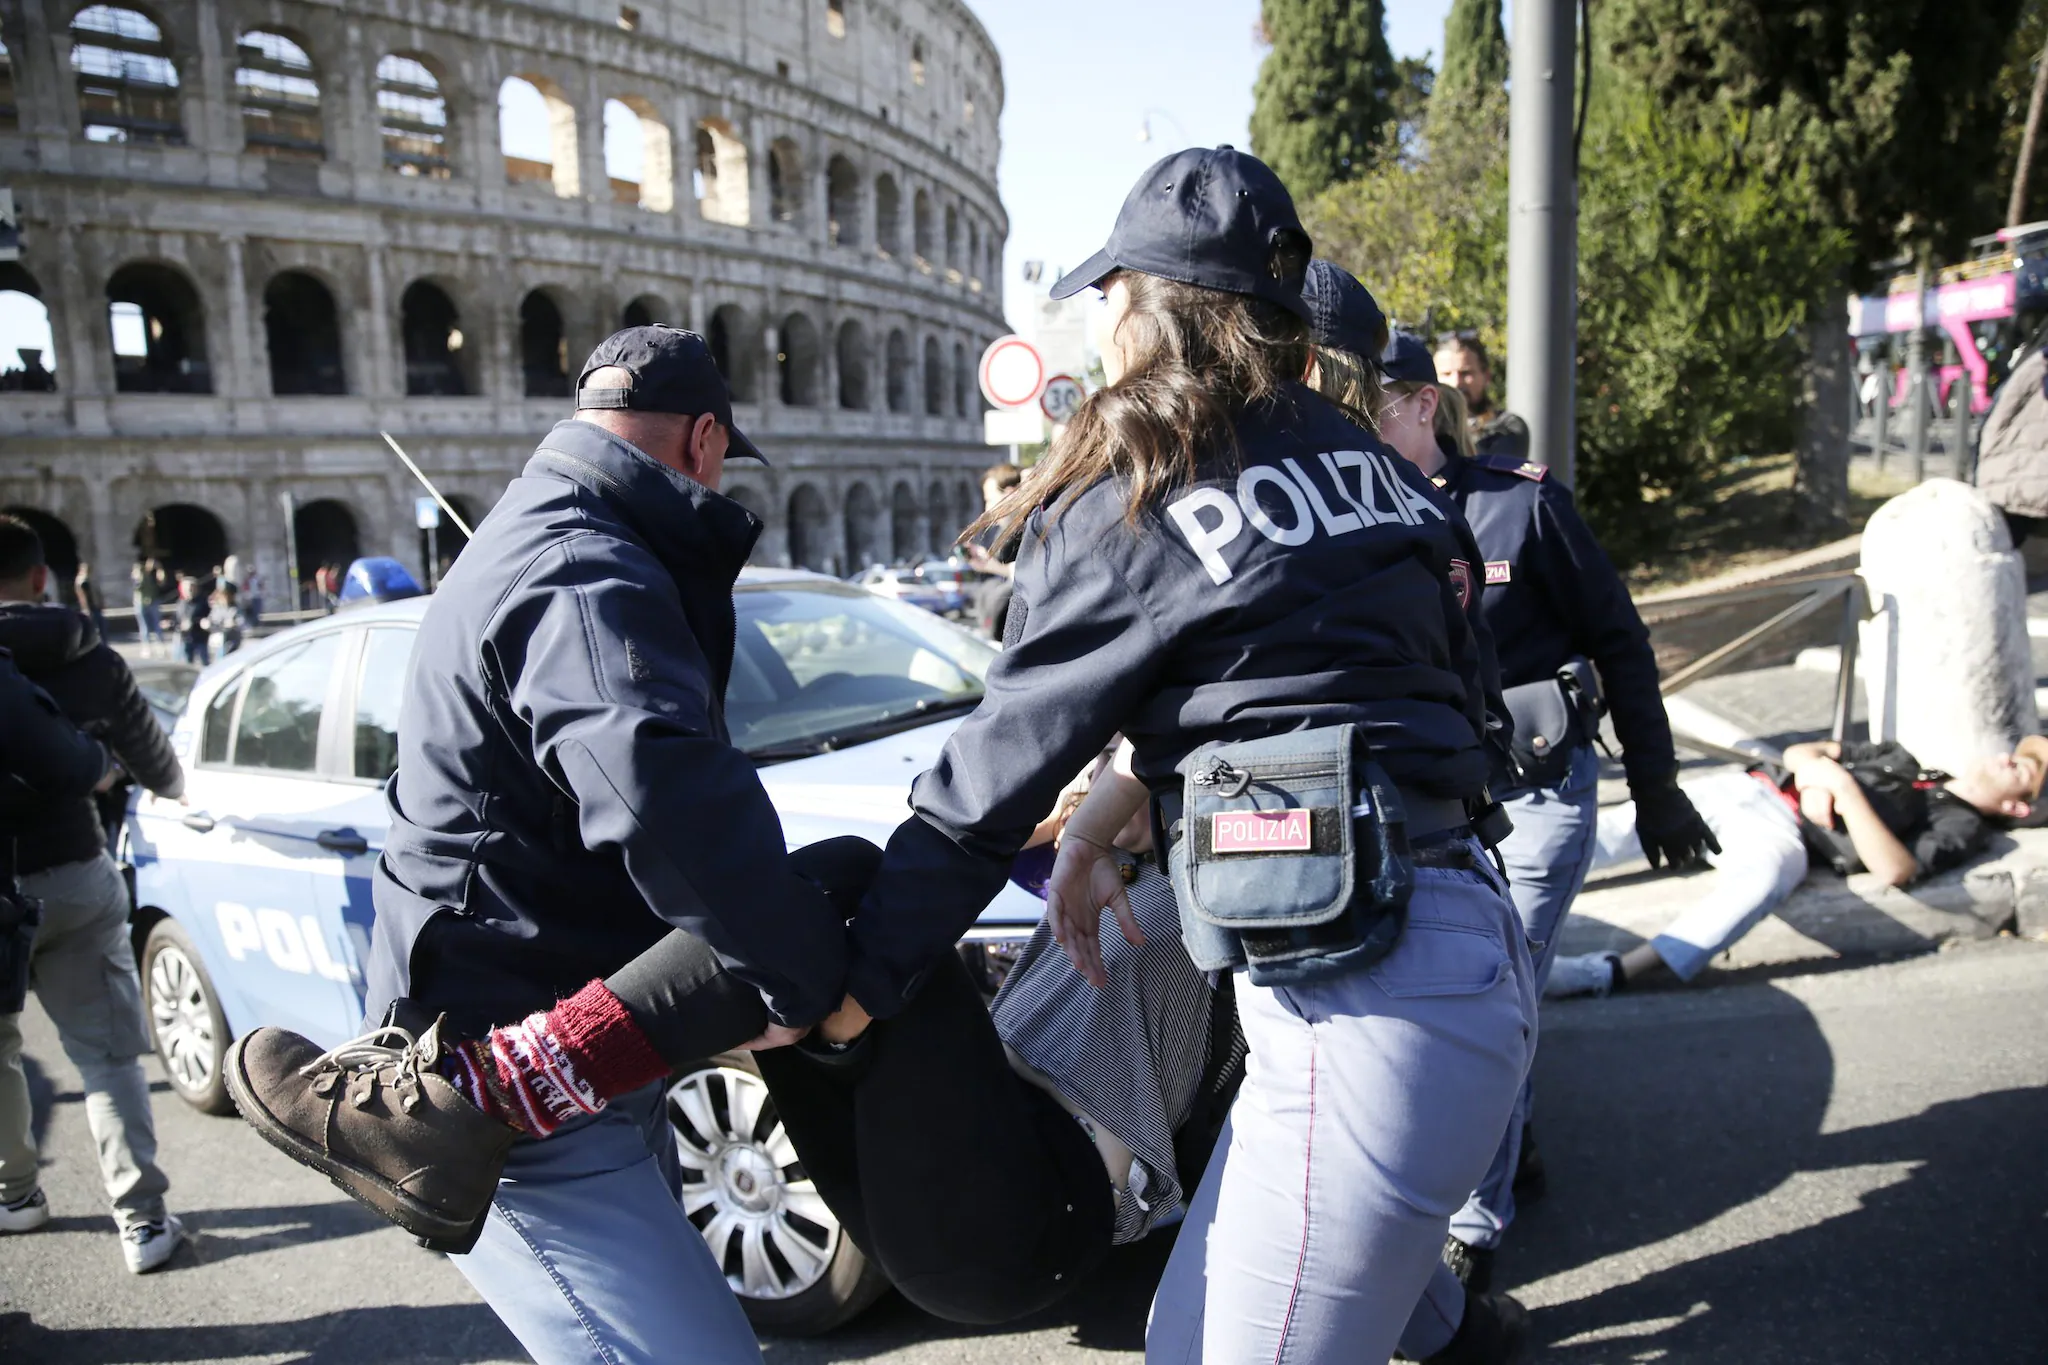 Attivisti bloccano il traffico al Colosseo: traffico in tilt e automobilisti furiosi